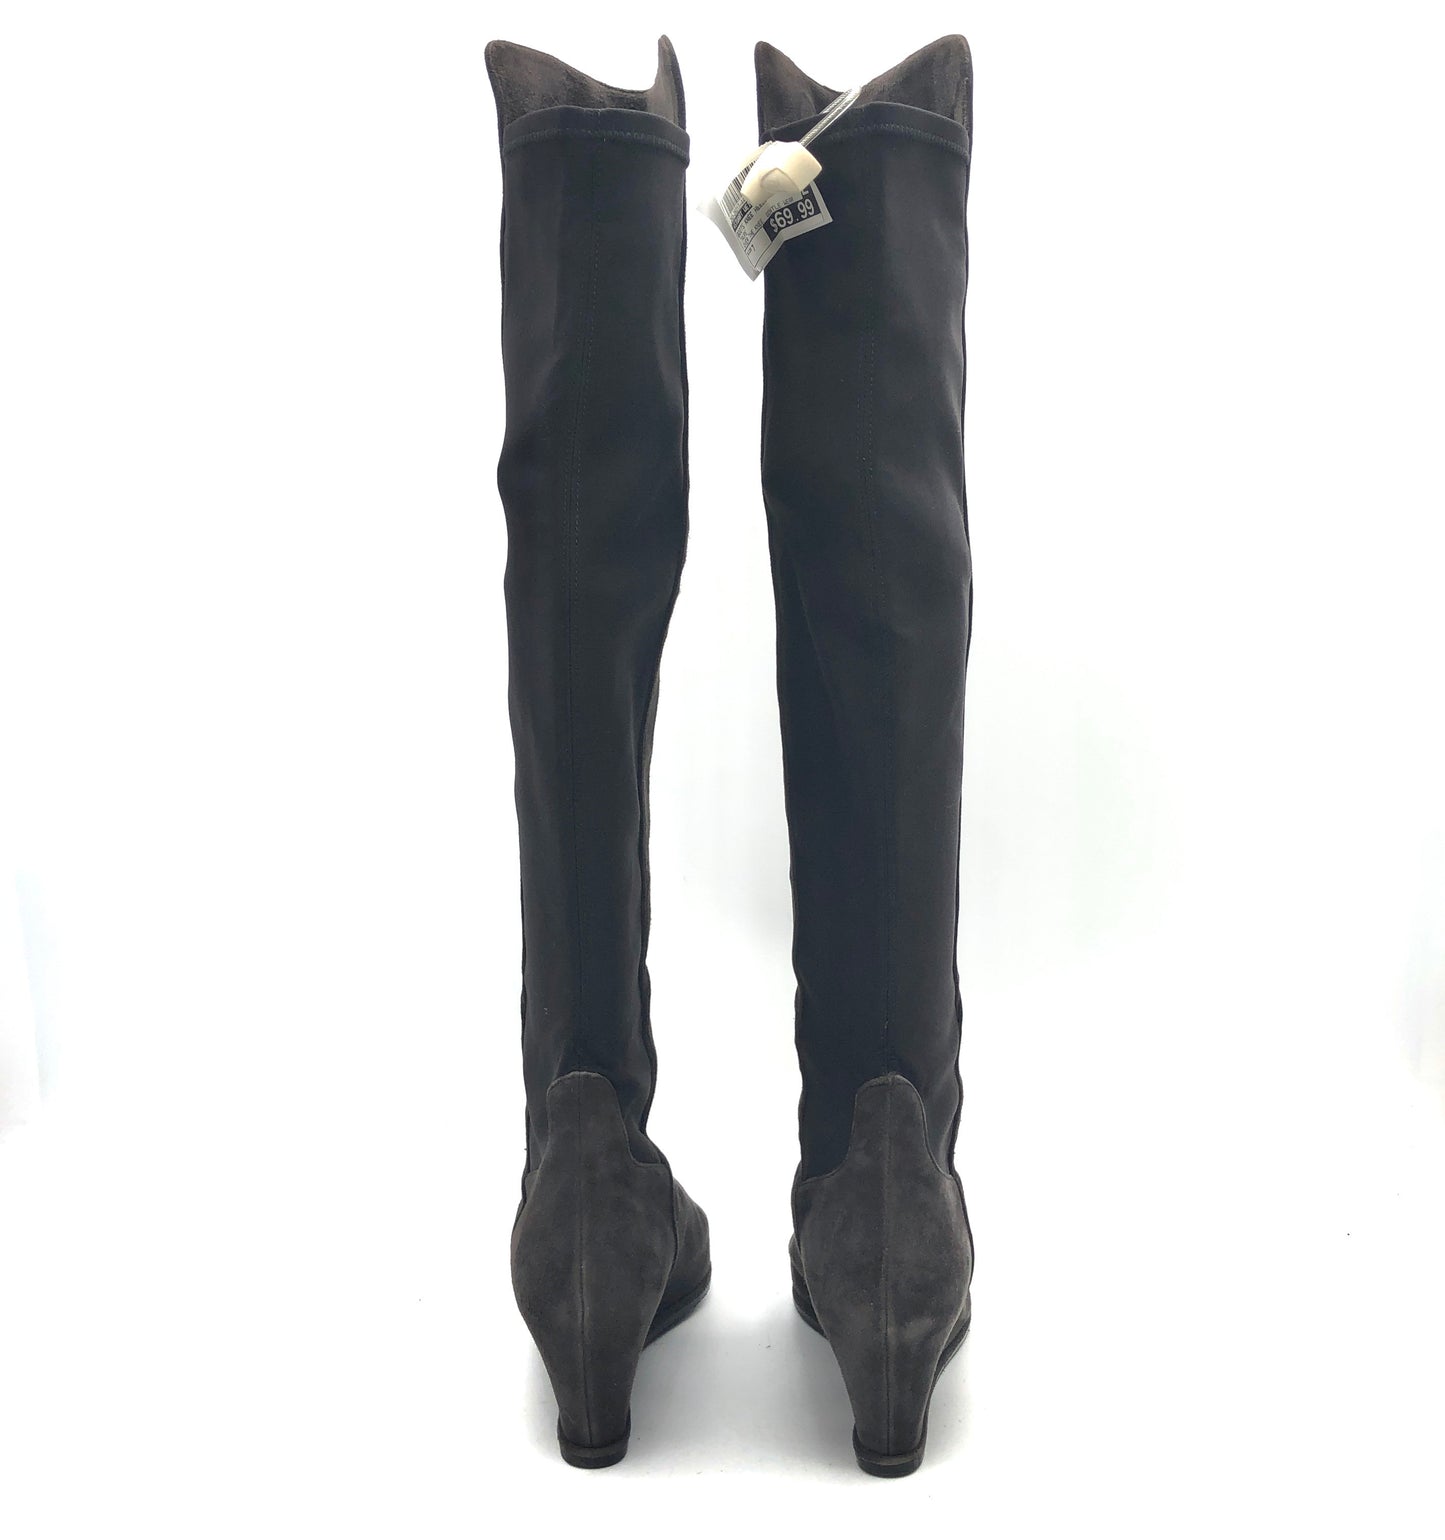 Boots Knee Heels By Stuart Weitzman  Size: 7